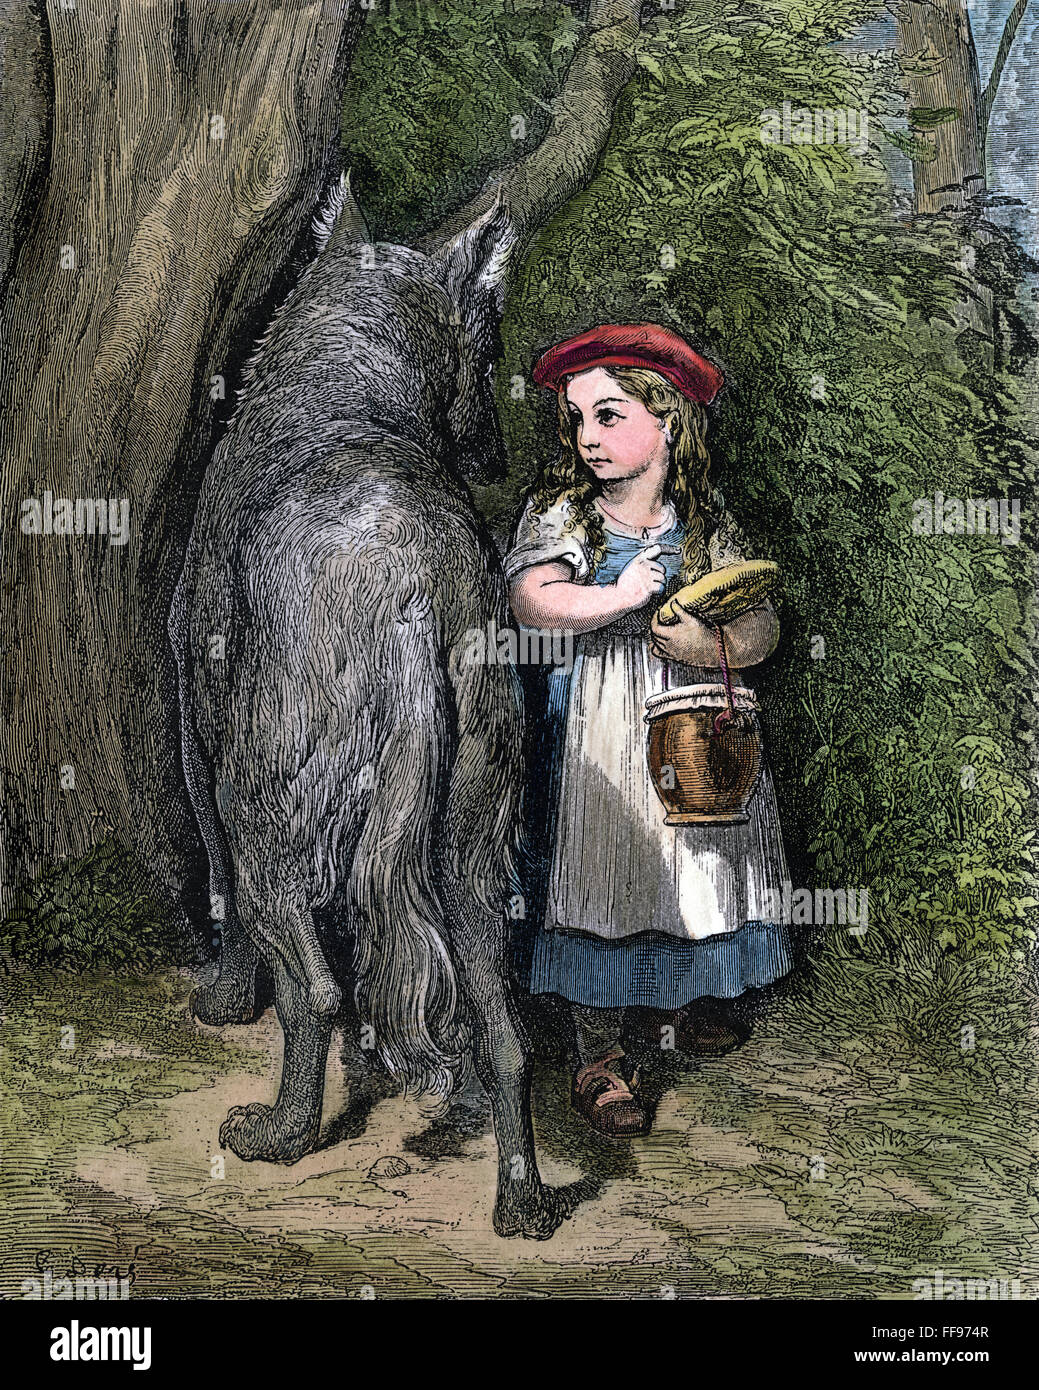 LITTLE RED RIDING HOOD. /nLittle Red Riding Hood trifft den Wolf im Wald auf dem Weg zu ihrer Großmutter zu besuchen. Holzstich nach Gustave DorΘ, 19. Jahrhundert. Stockfoto